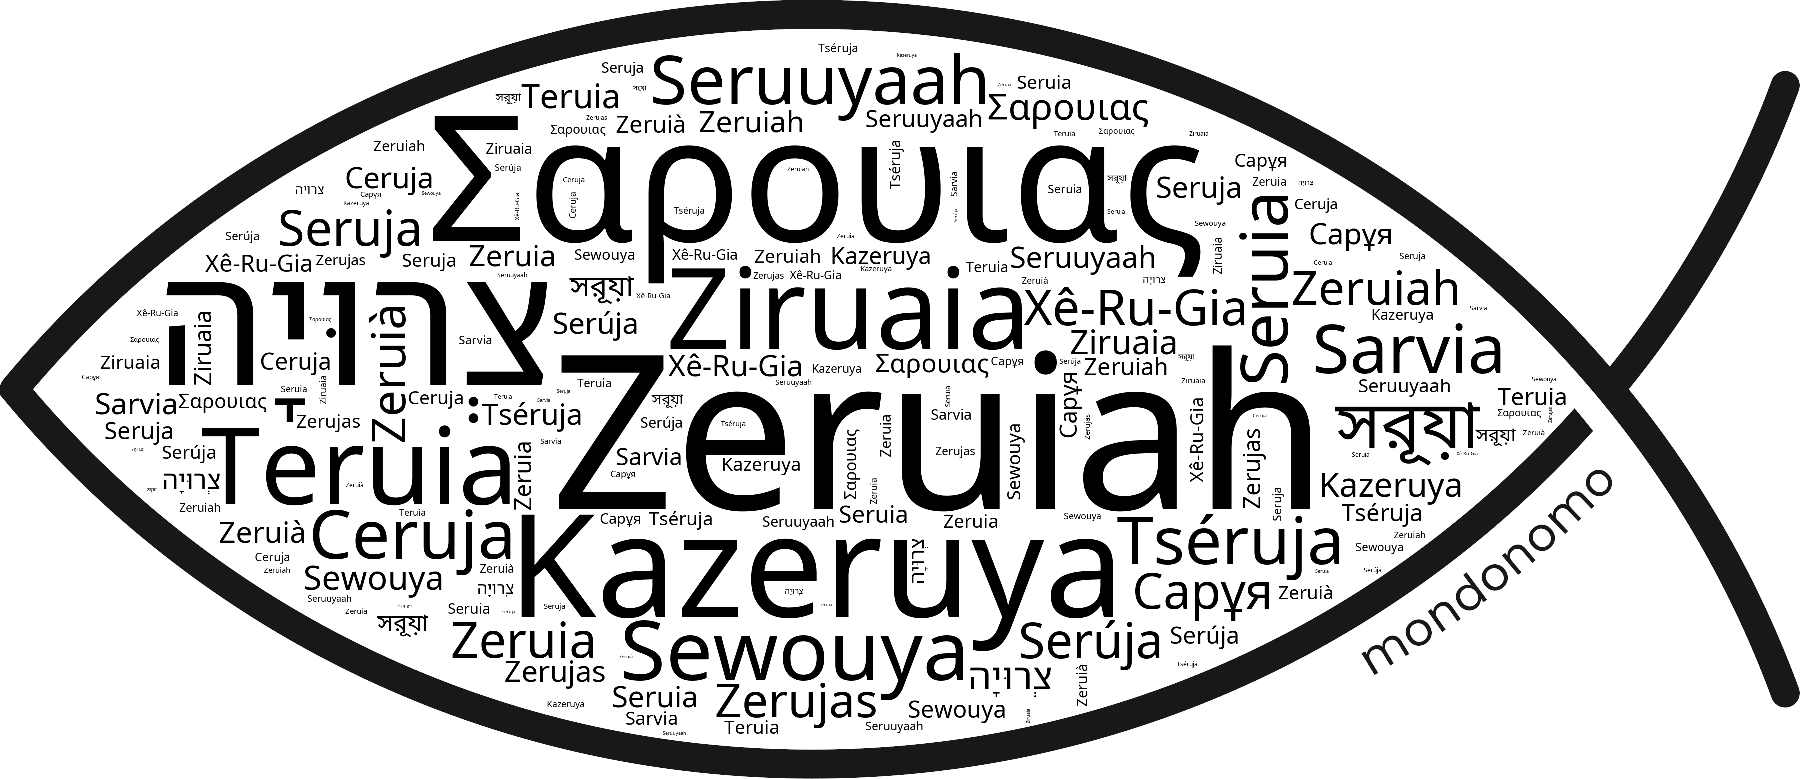 Name Zeruiah in the world's Bibles